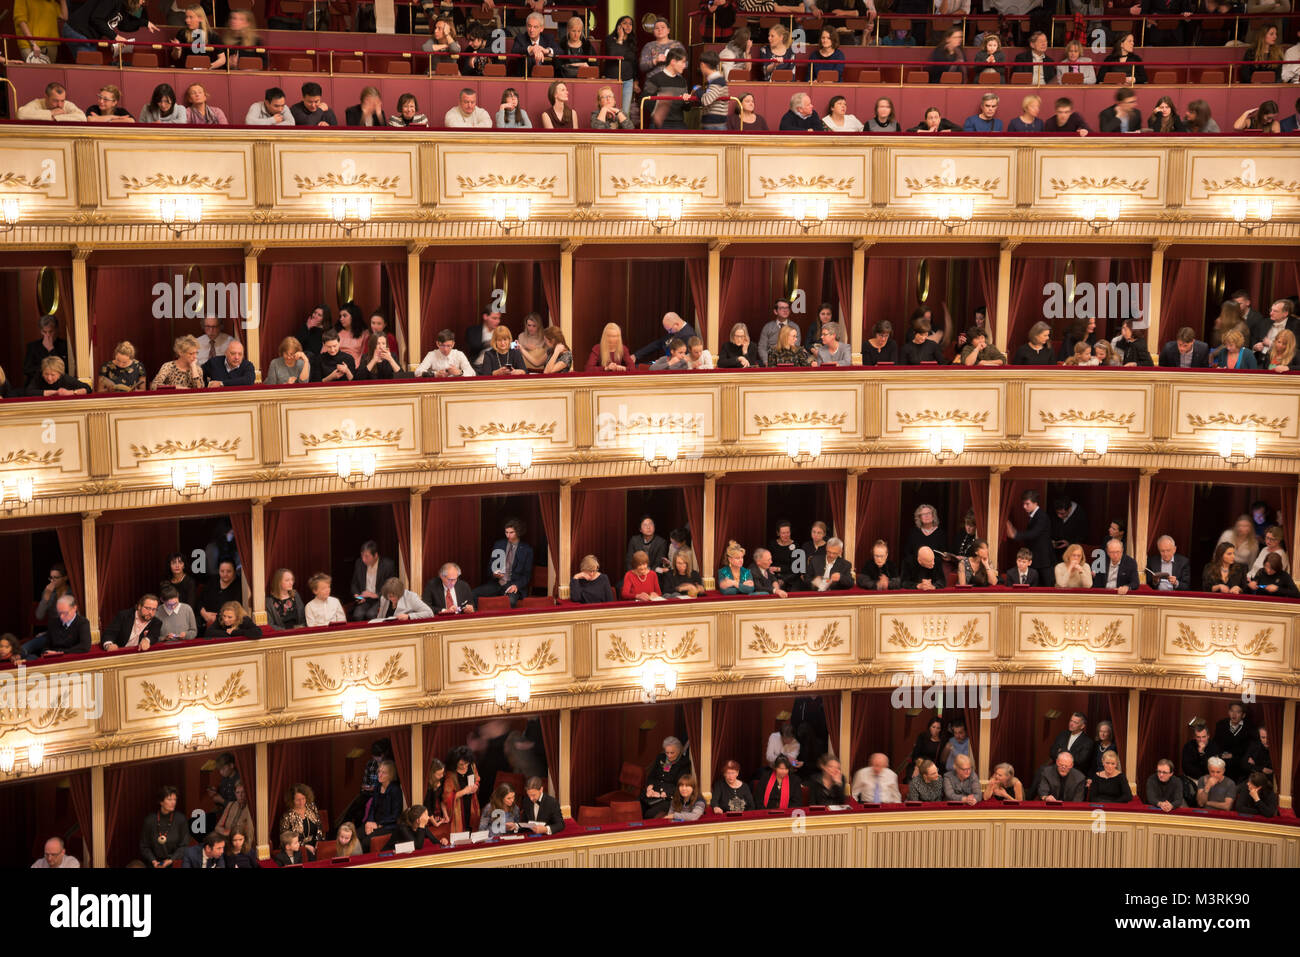 Vienne, AUTRICHE - Février, 2018 : Intérieur de l'auditorium de l'Opéra de Vienne avec l'auditoire dans leurs Loges pour se préparer à la performance. Banque D'Images